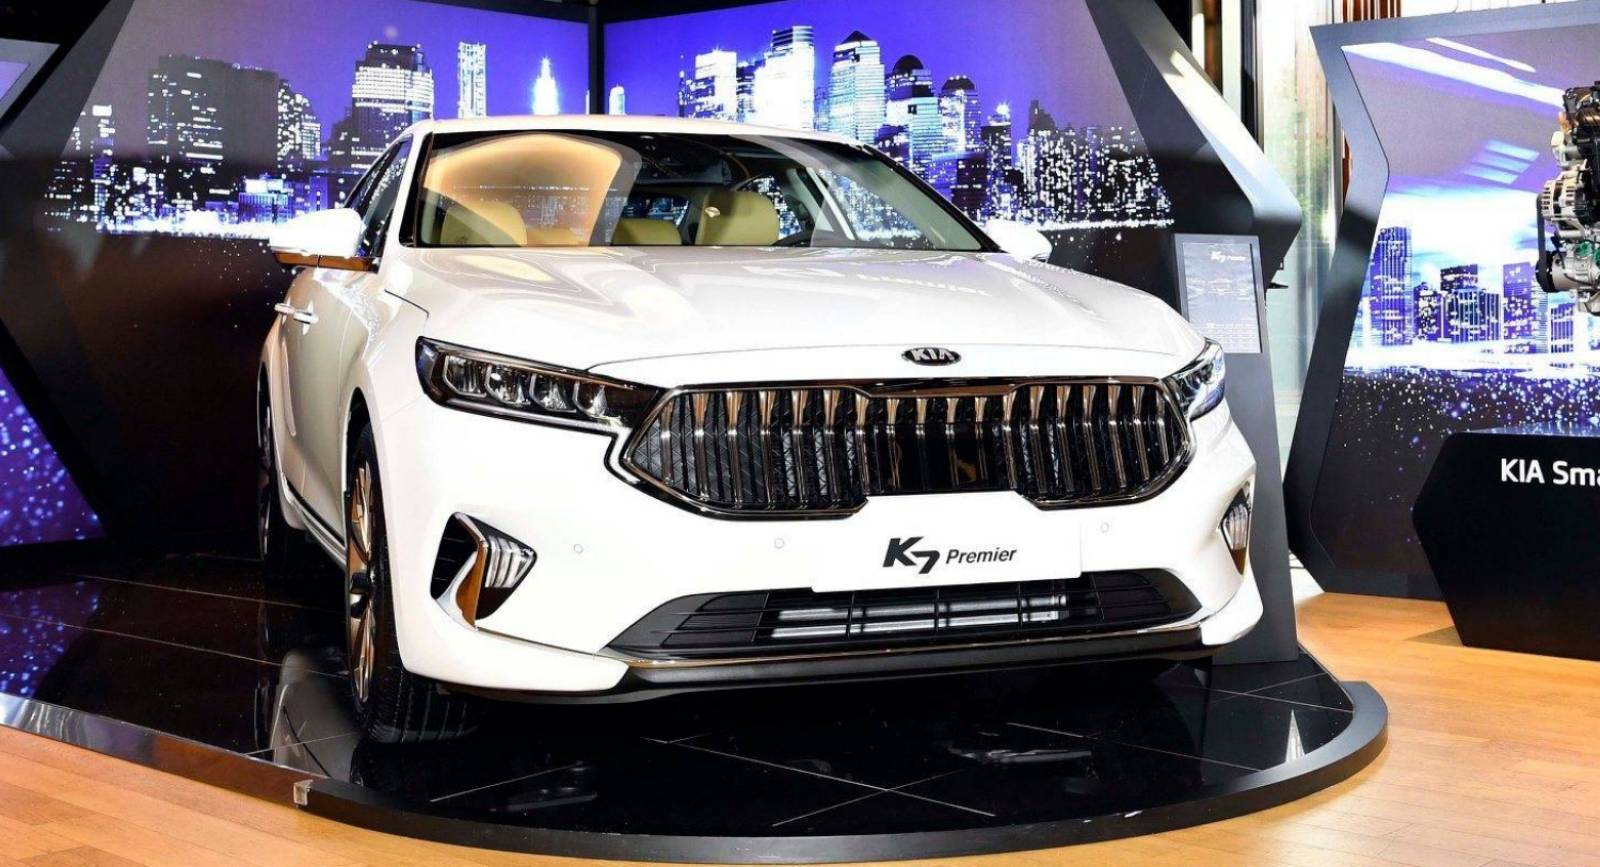 Facelifted 2020 Kia Cadenza Breaks Cover As The K7 Premier In Korea |  Carscoops